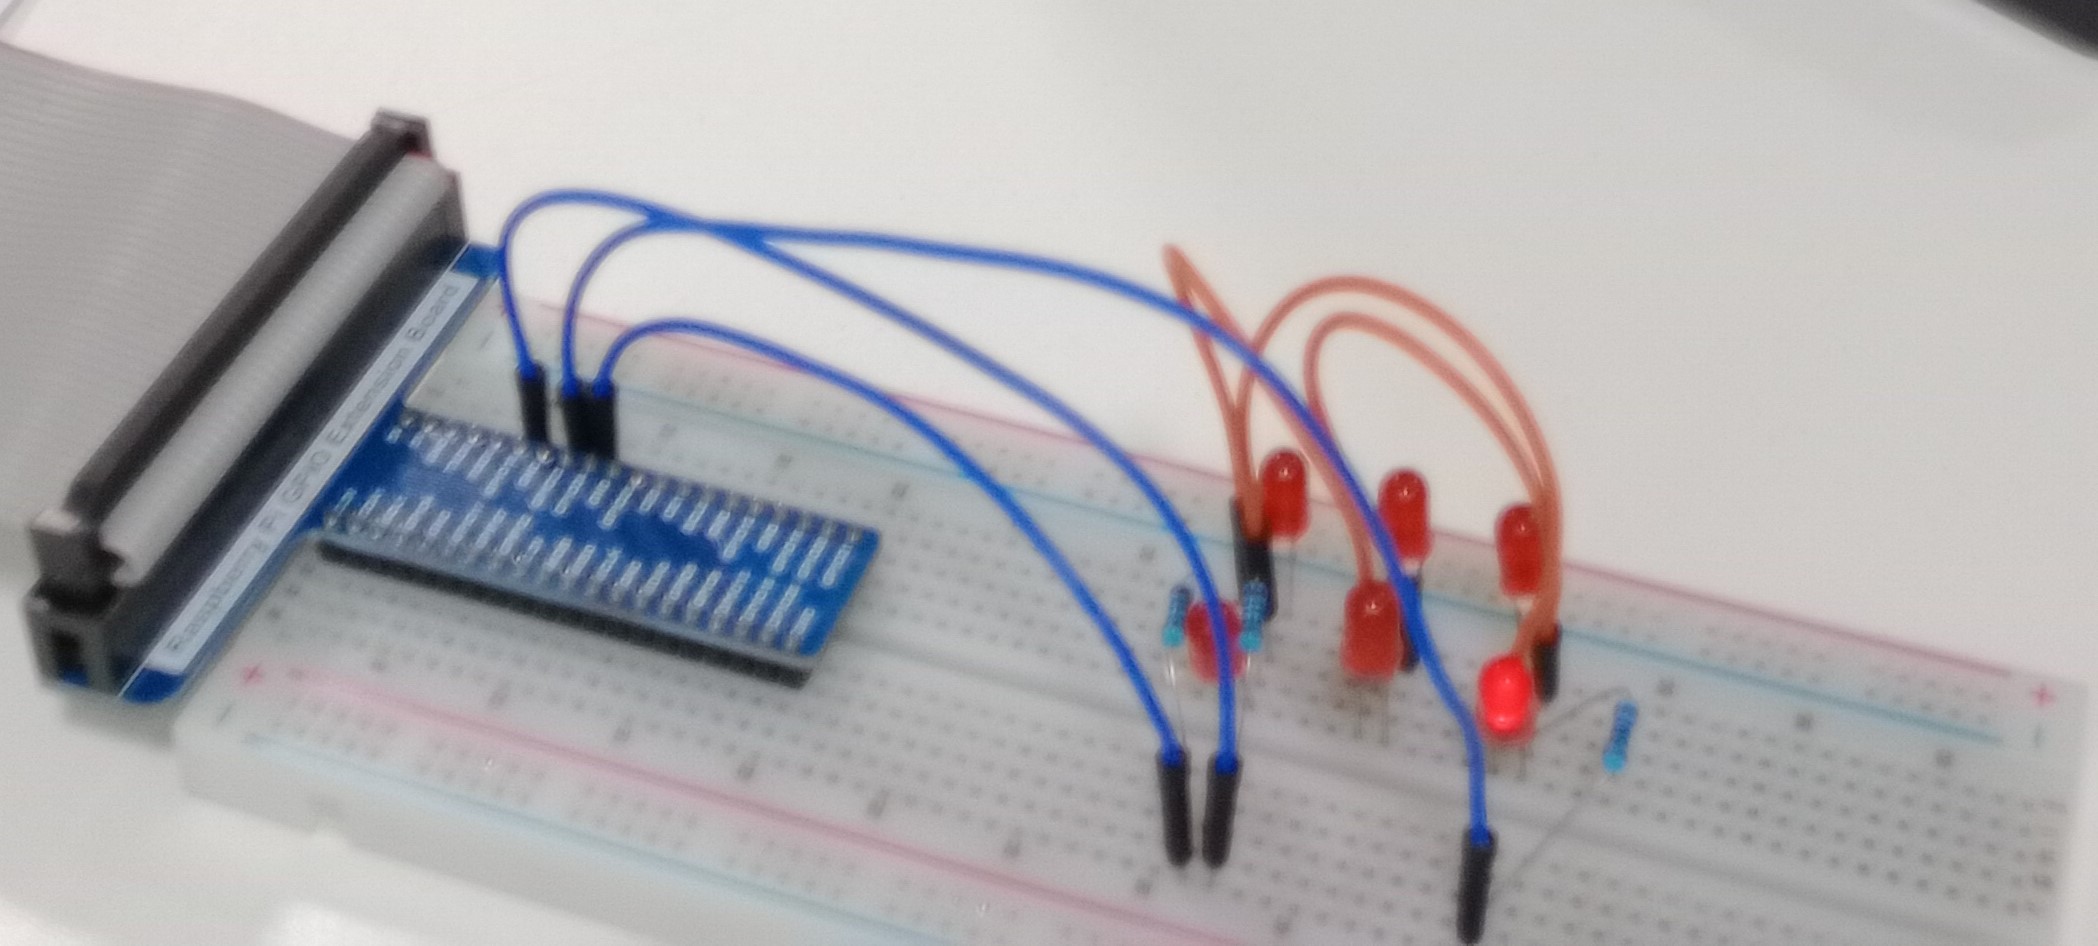 6 Diodos LEDS conectados a una Protoboard